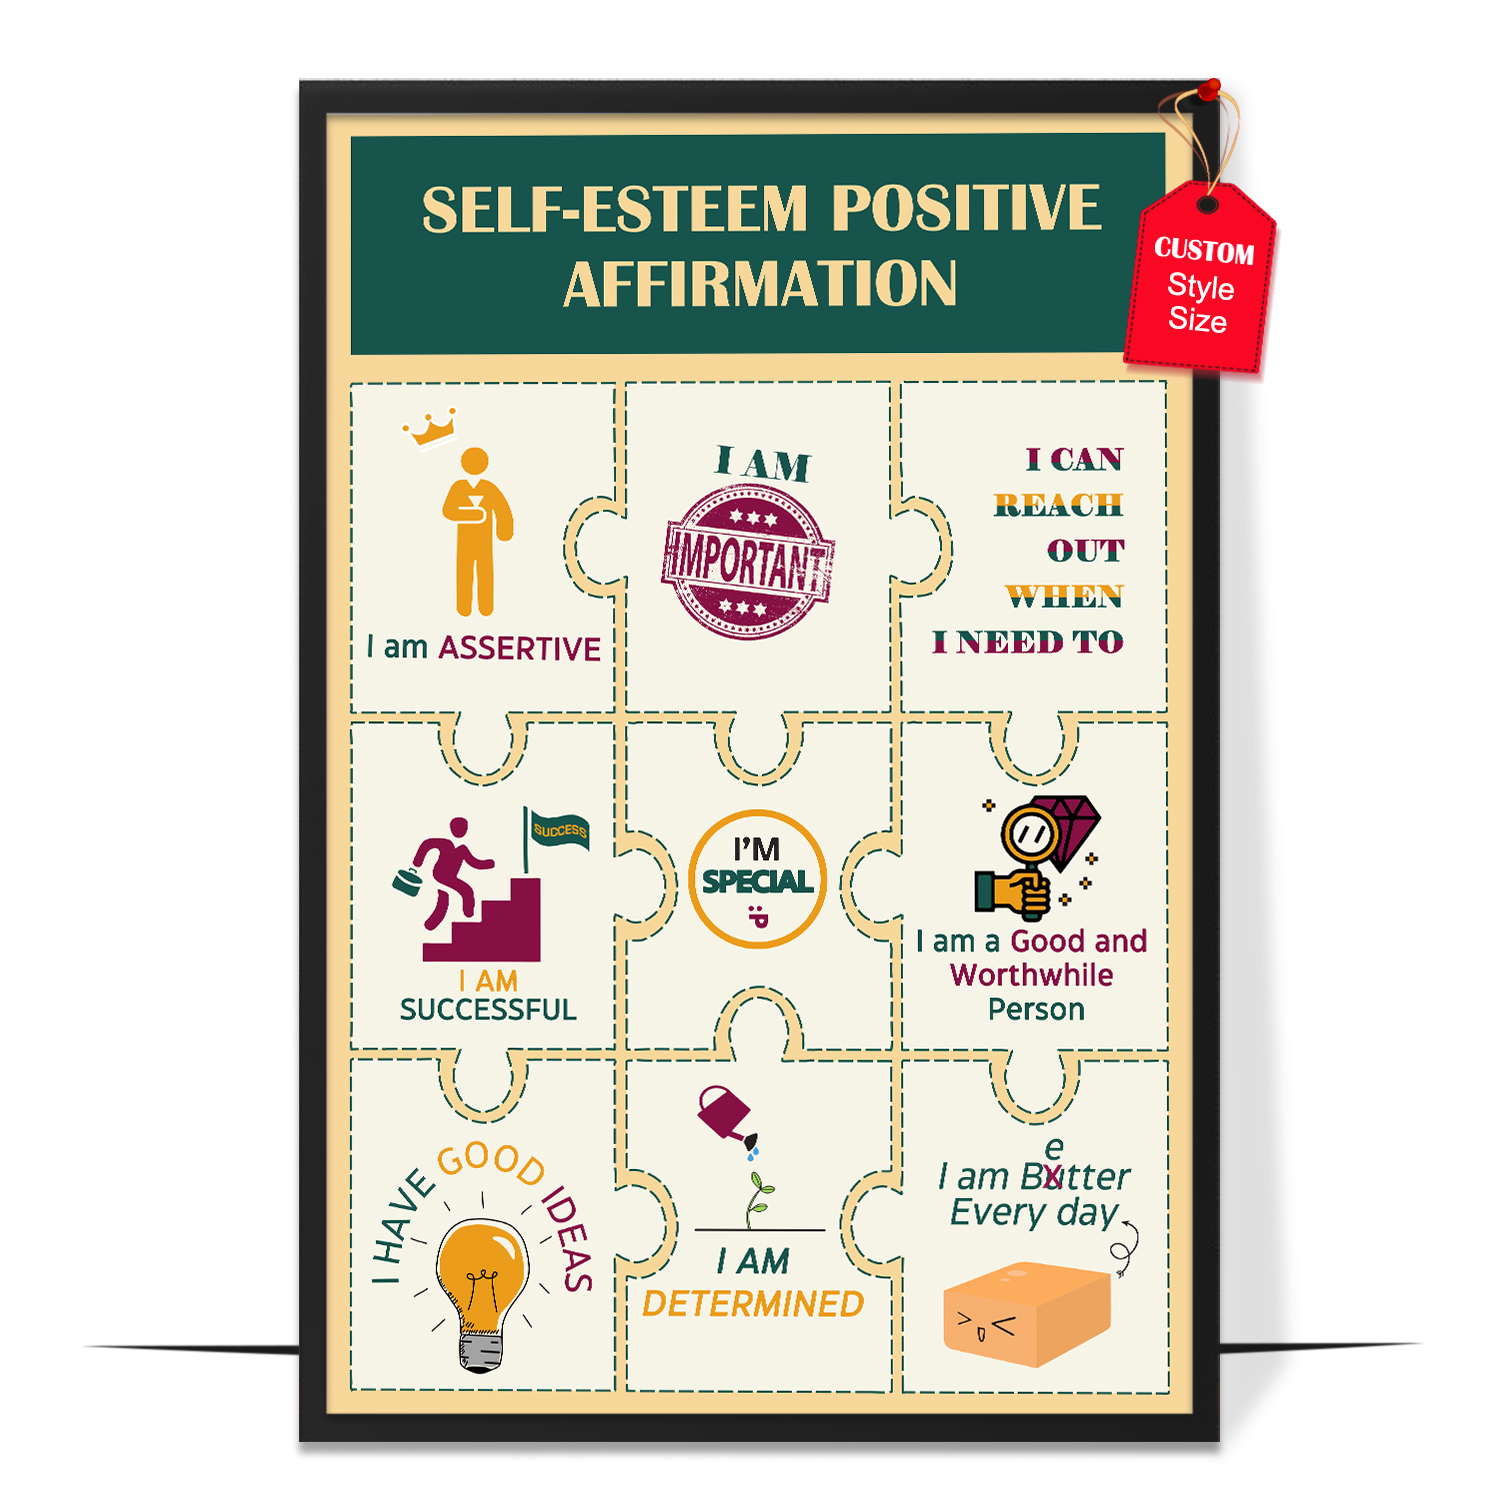 Self-Esteem Positive Affirmations Design 2 Poster